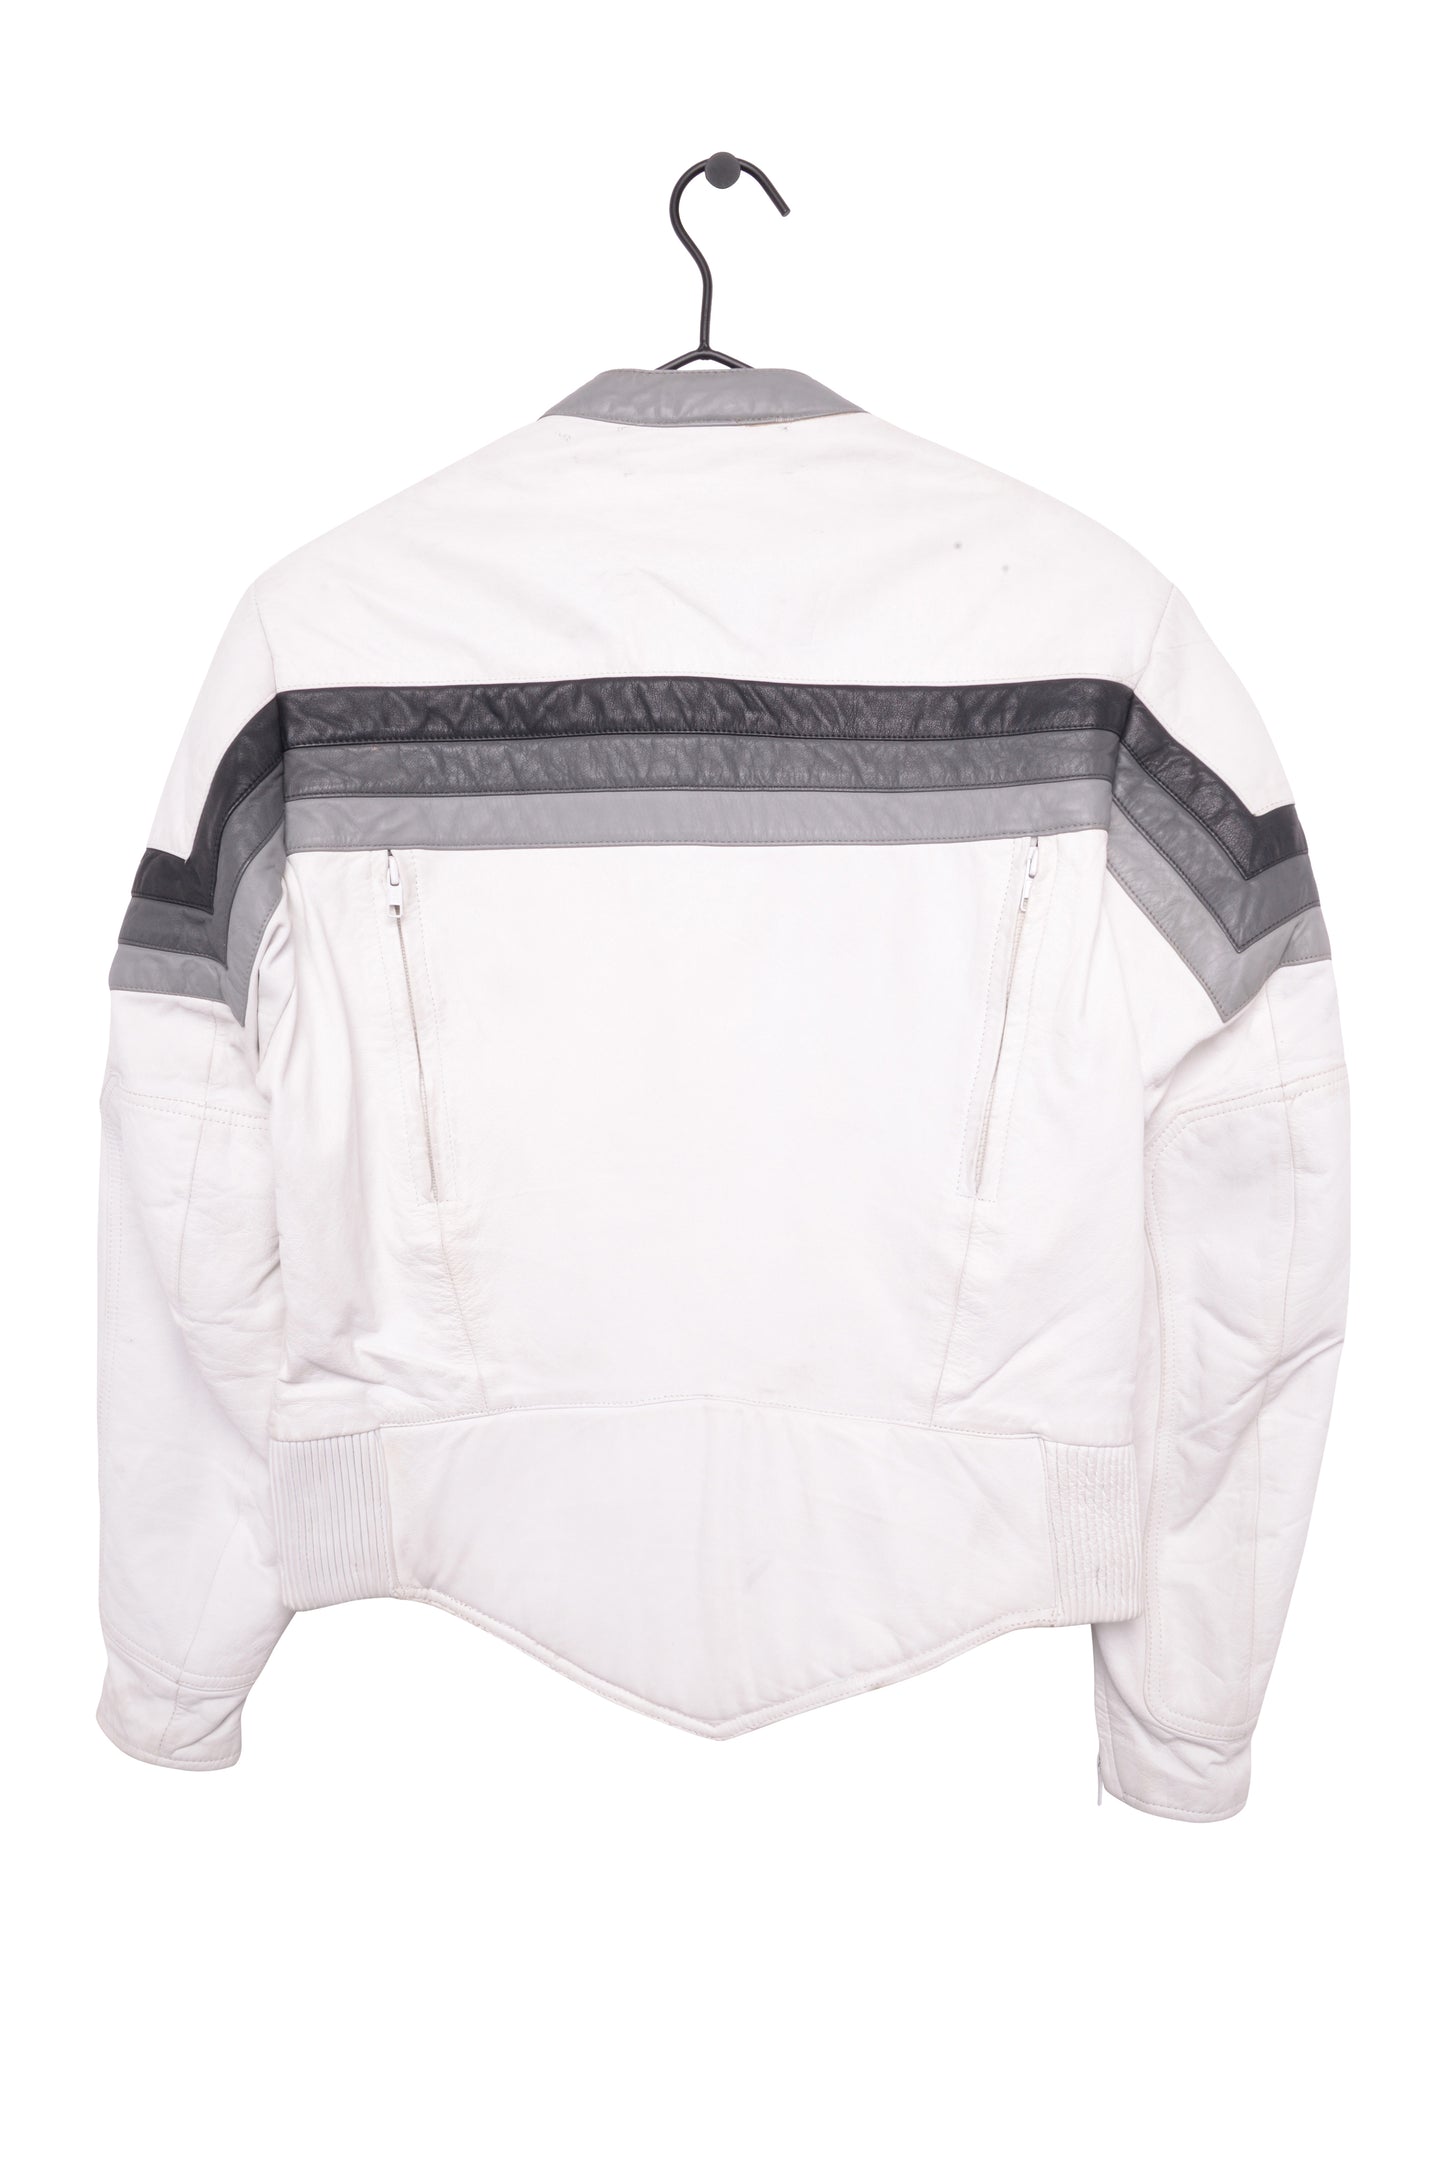 1980s White Leather Moto Jacket